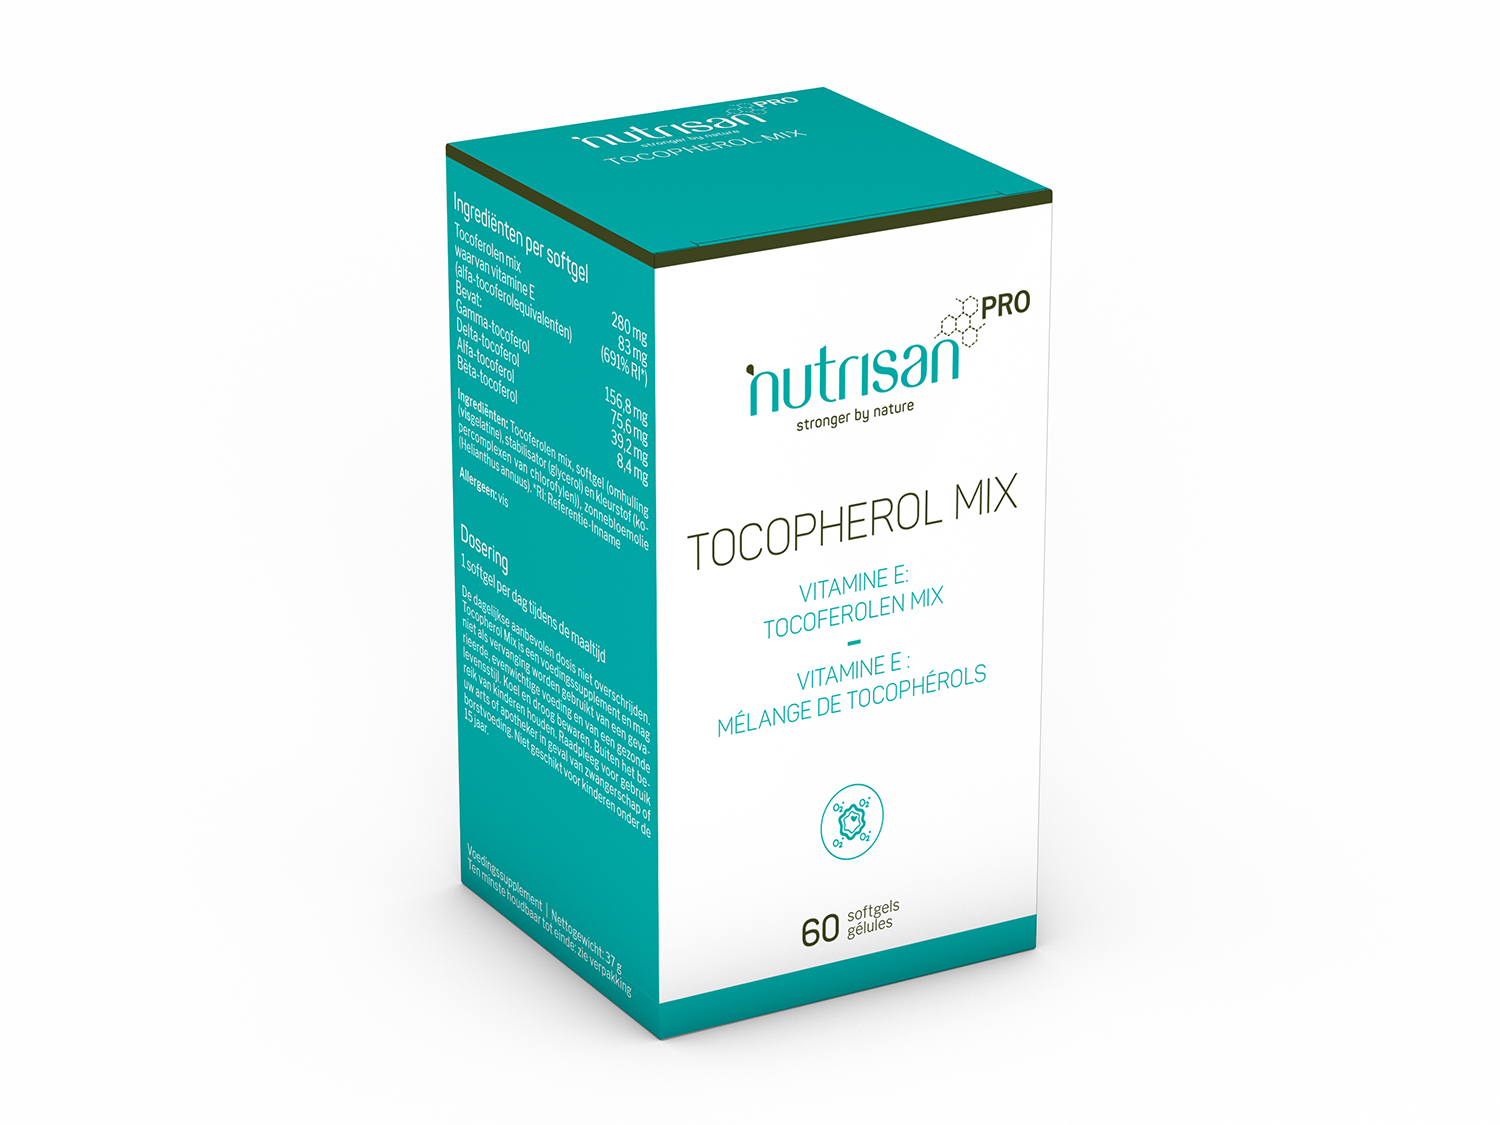 Tocopherol Mix - 60 softgels